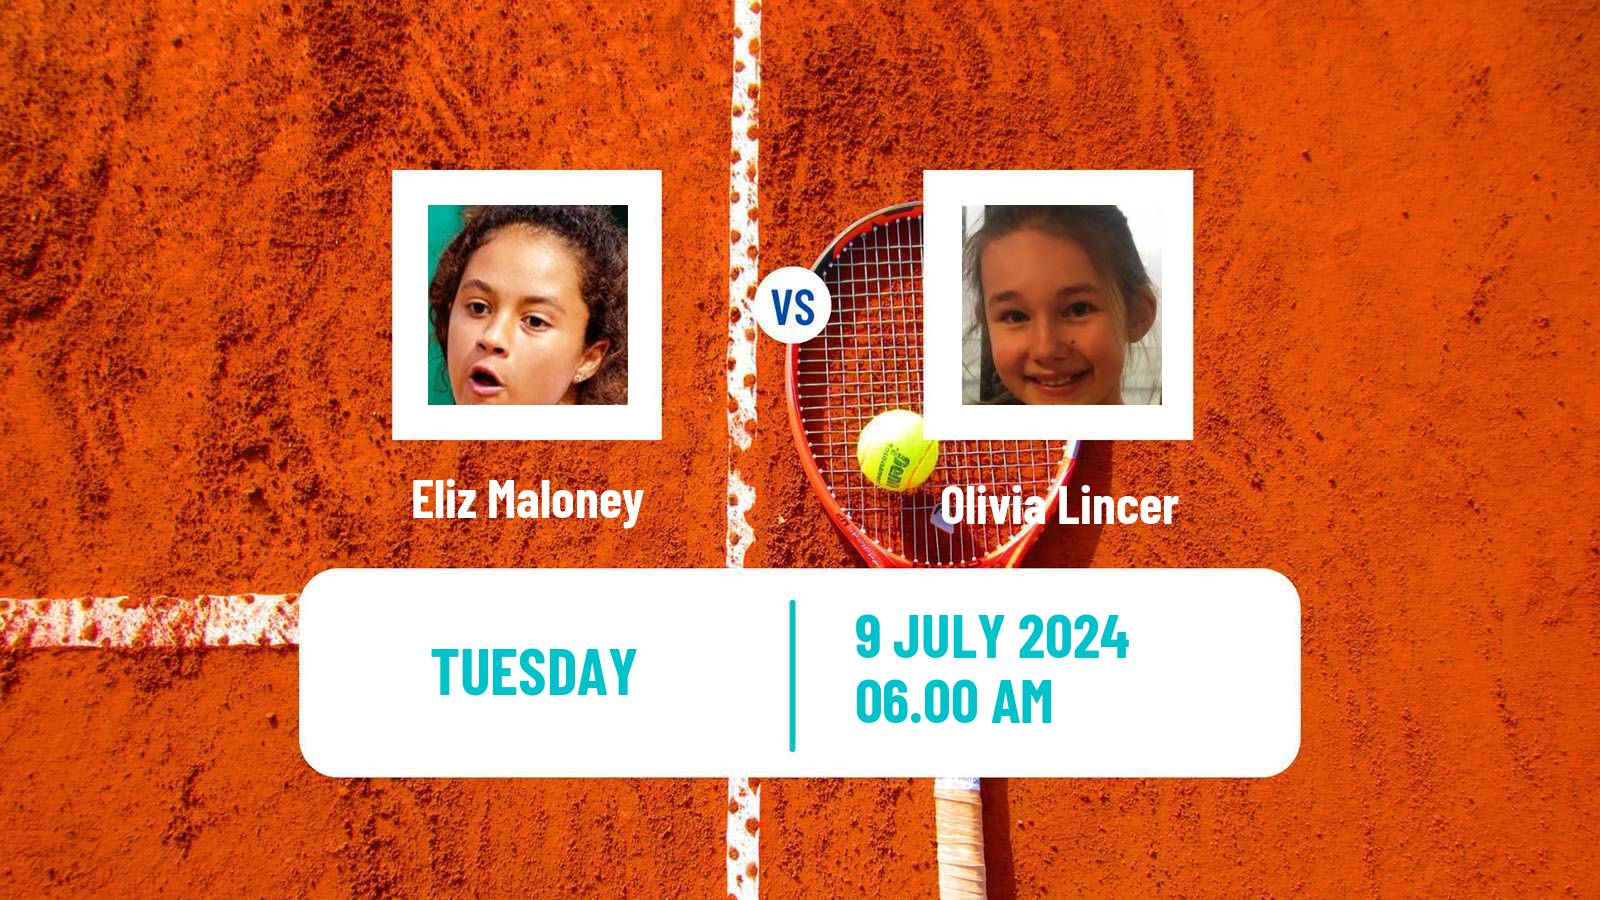 Tennis ITF W15 Grodzisk Mazowiecki Women Eliz Maloney - Olivia Lincer